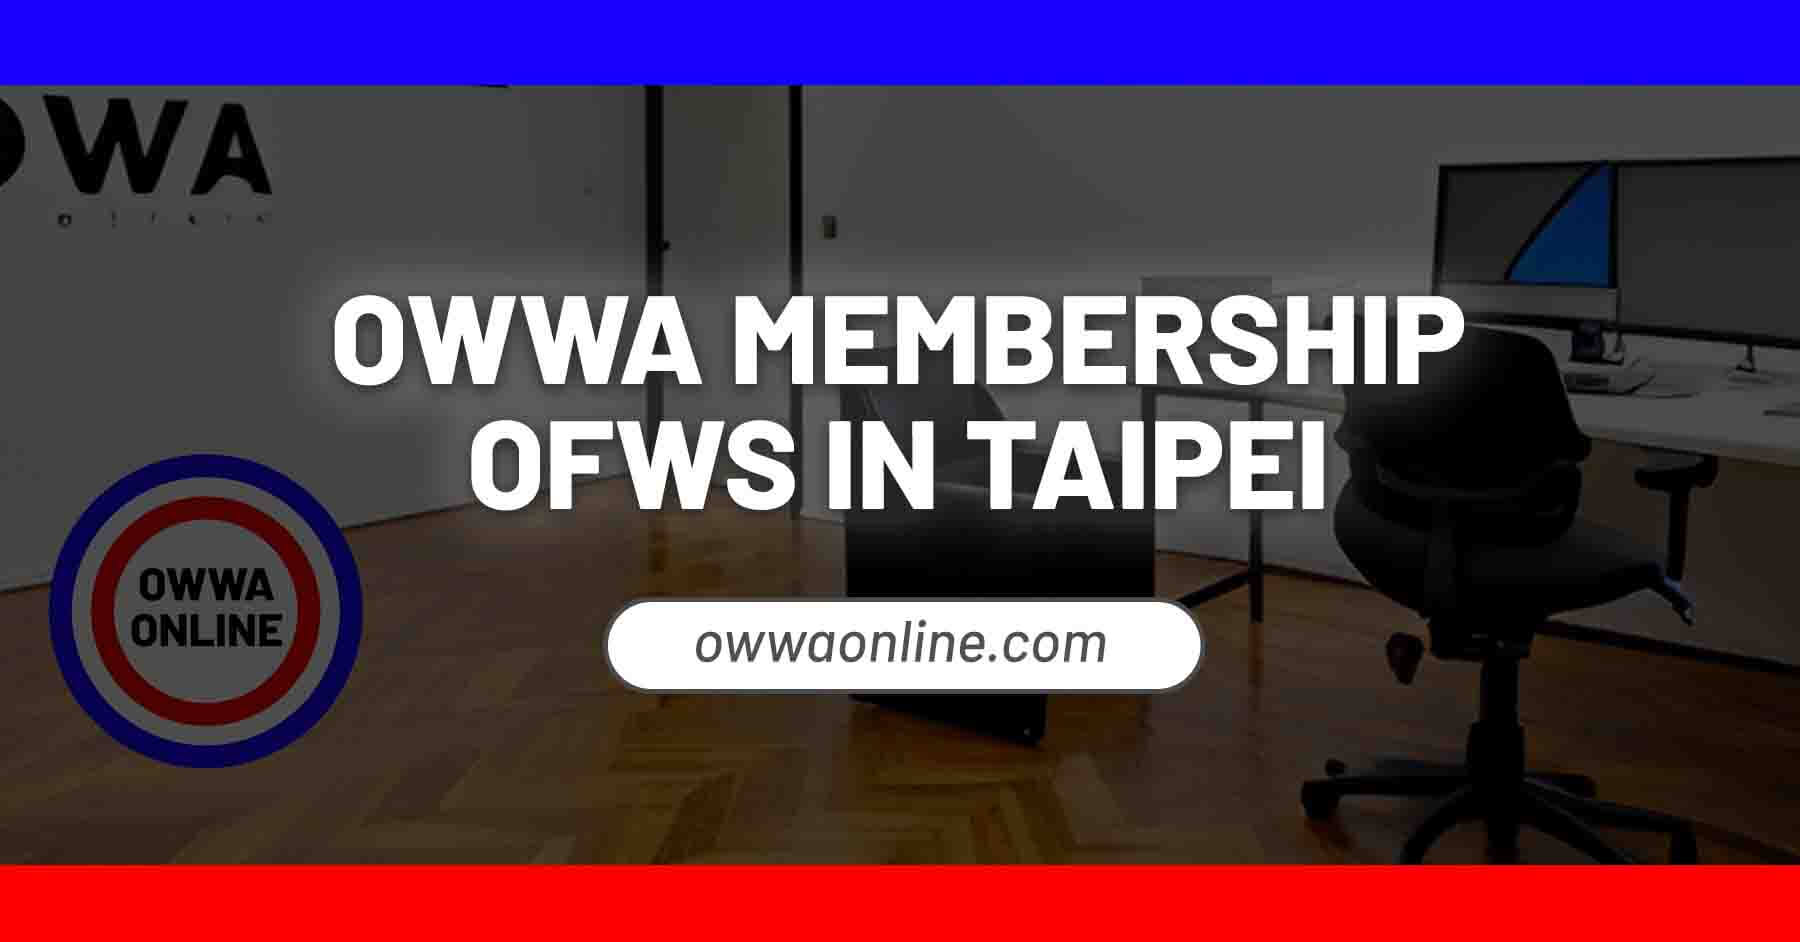 owwa membership renewal in taipei taiwan